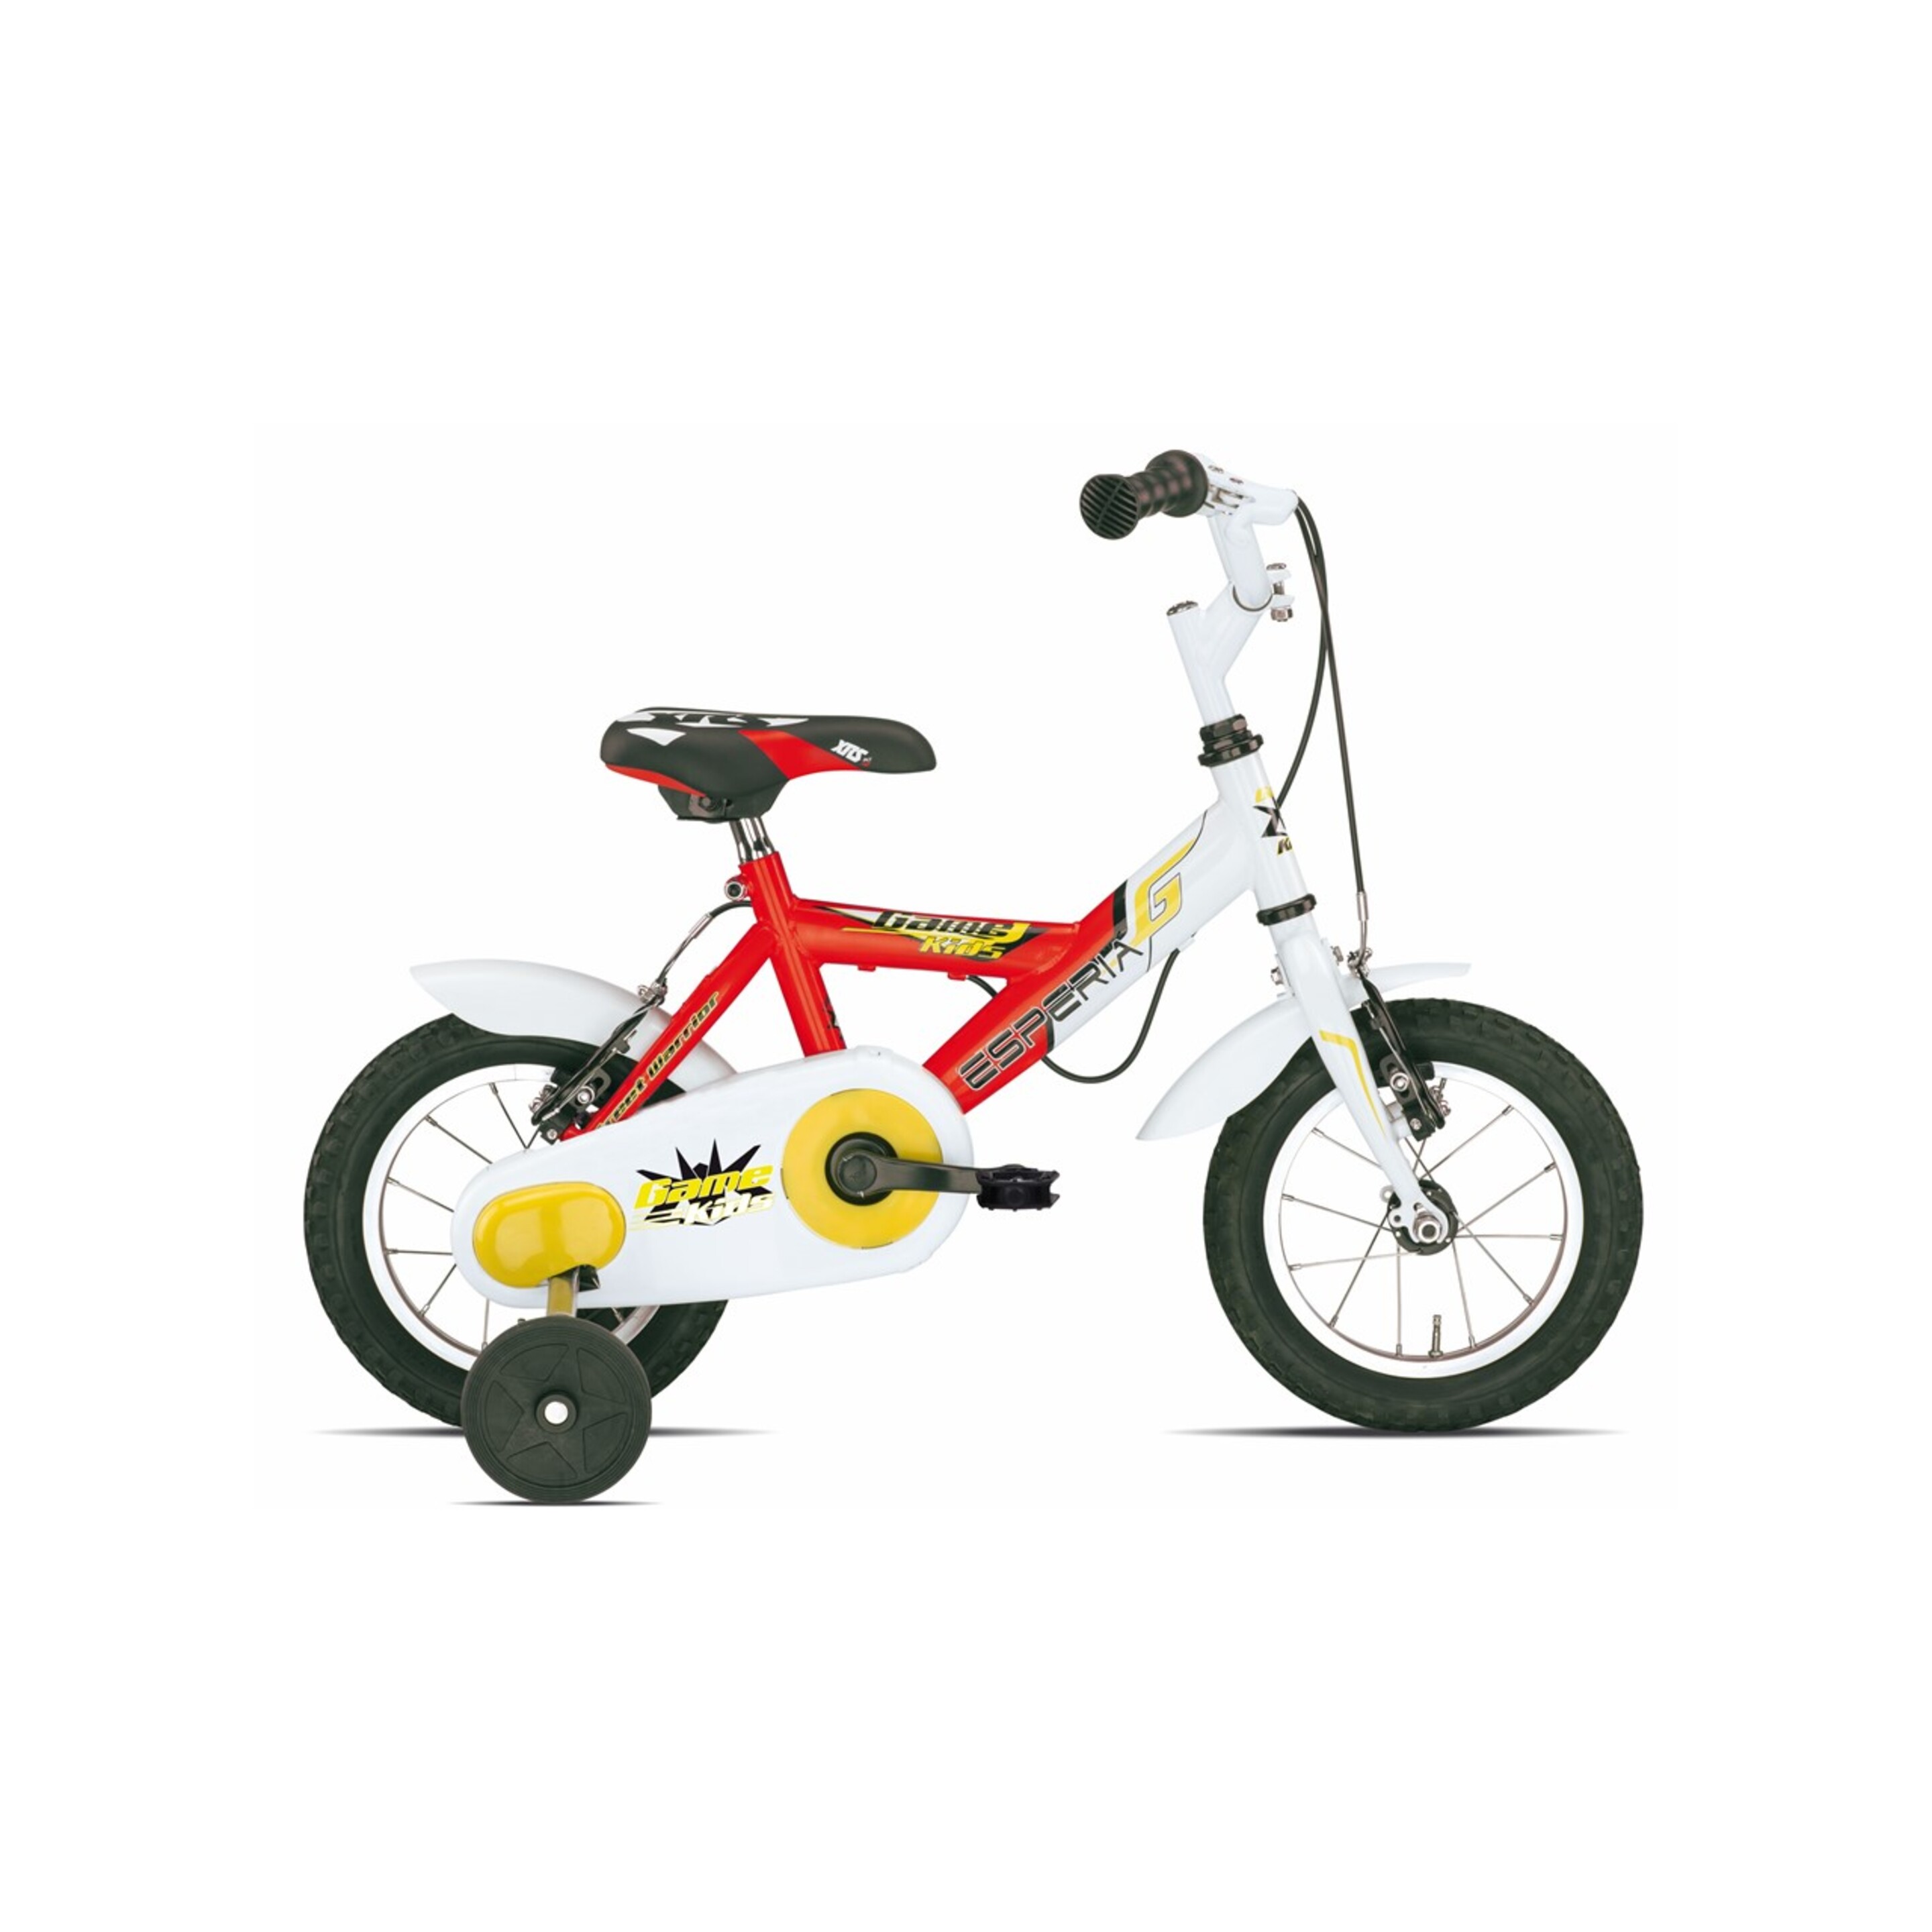 Bicicleta Infantil Game Boy 9900 12" Esperia 1v